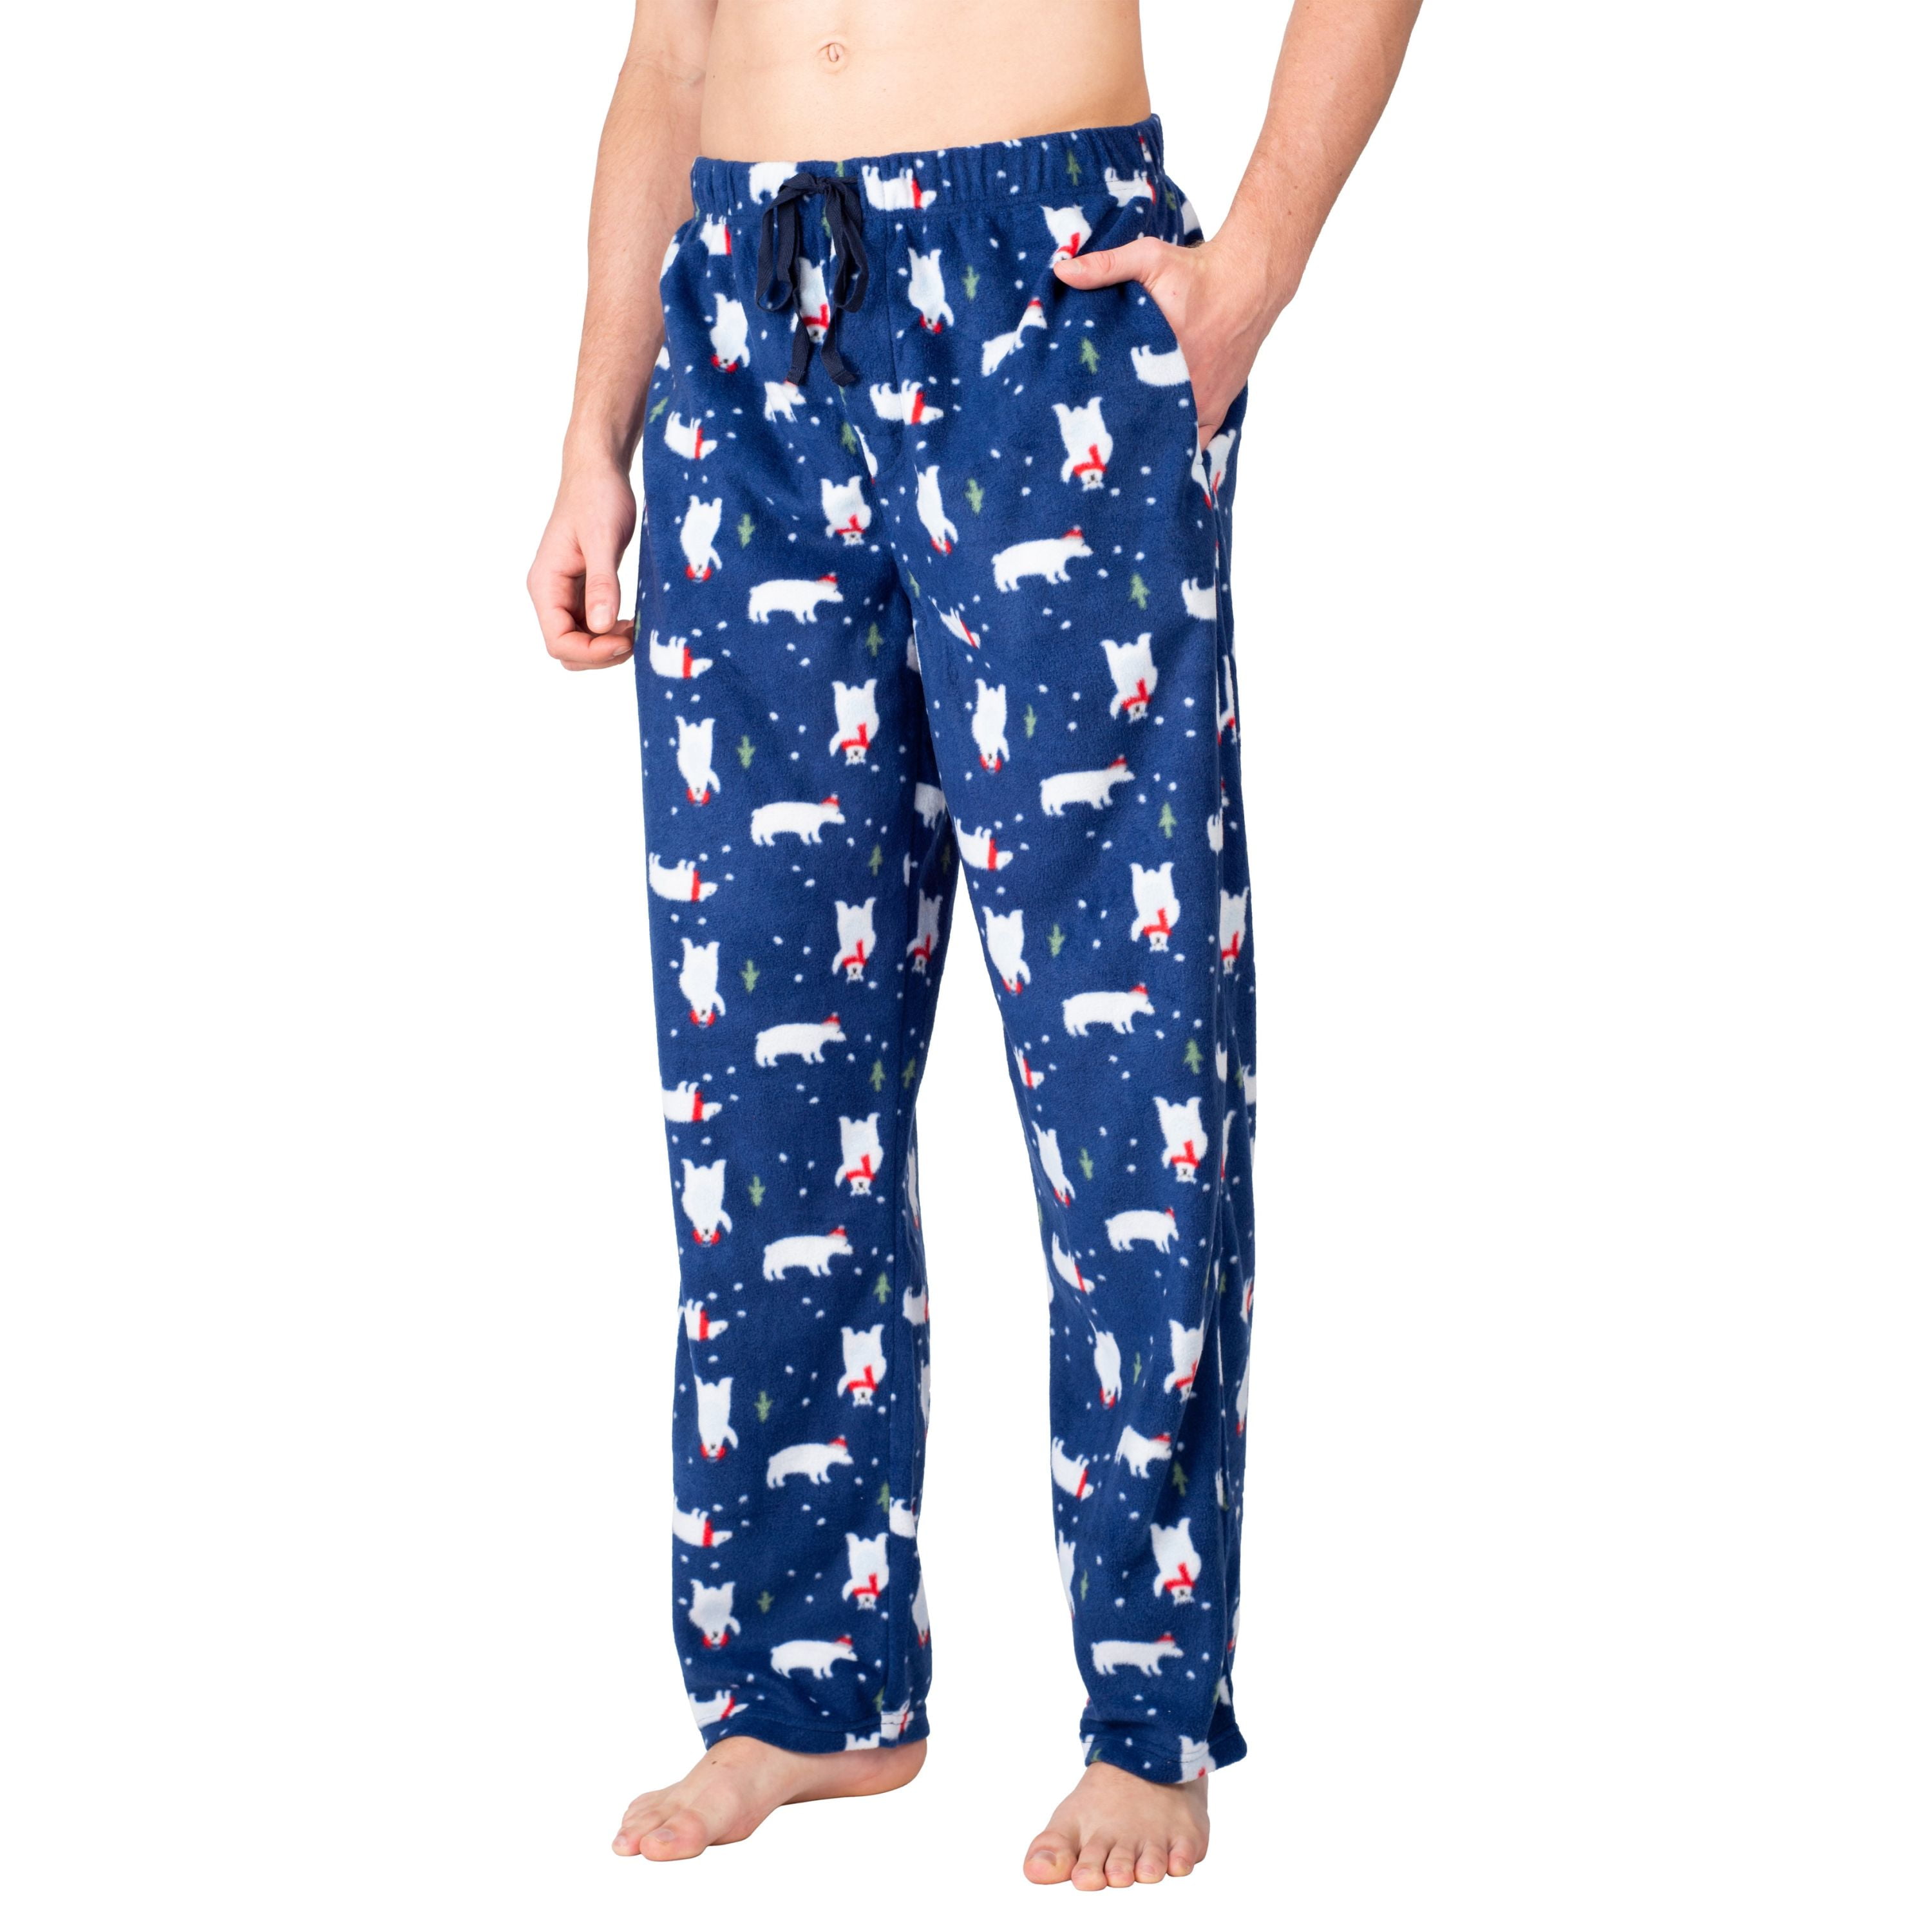 SLEEPHERO Mens Pajama Pants Fleece Pajama Pants For Men Comfortable Soft Christmas  Pajamas Plaid Pajama Bottoms Navy Buffalo Check X-Large 